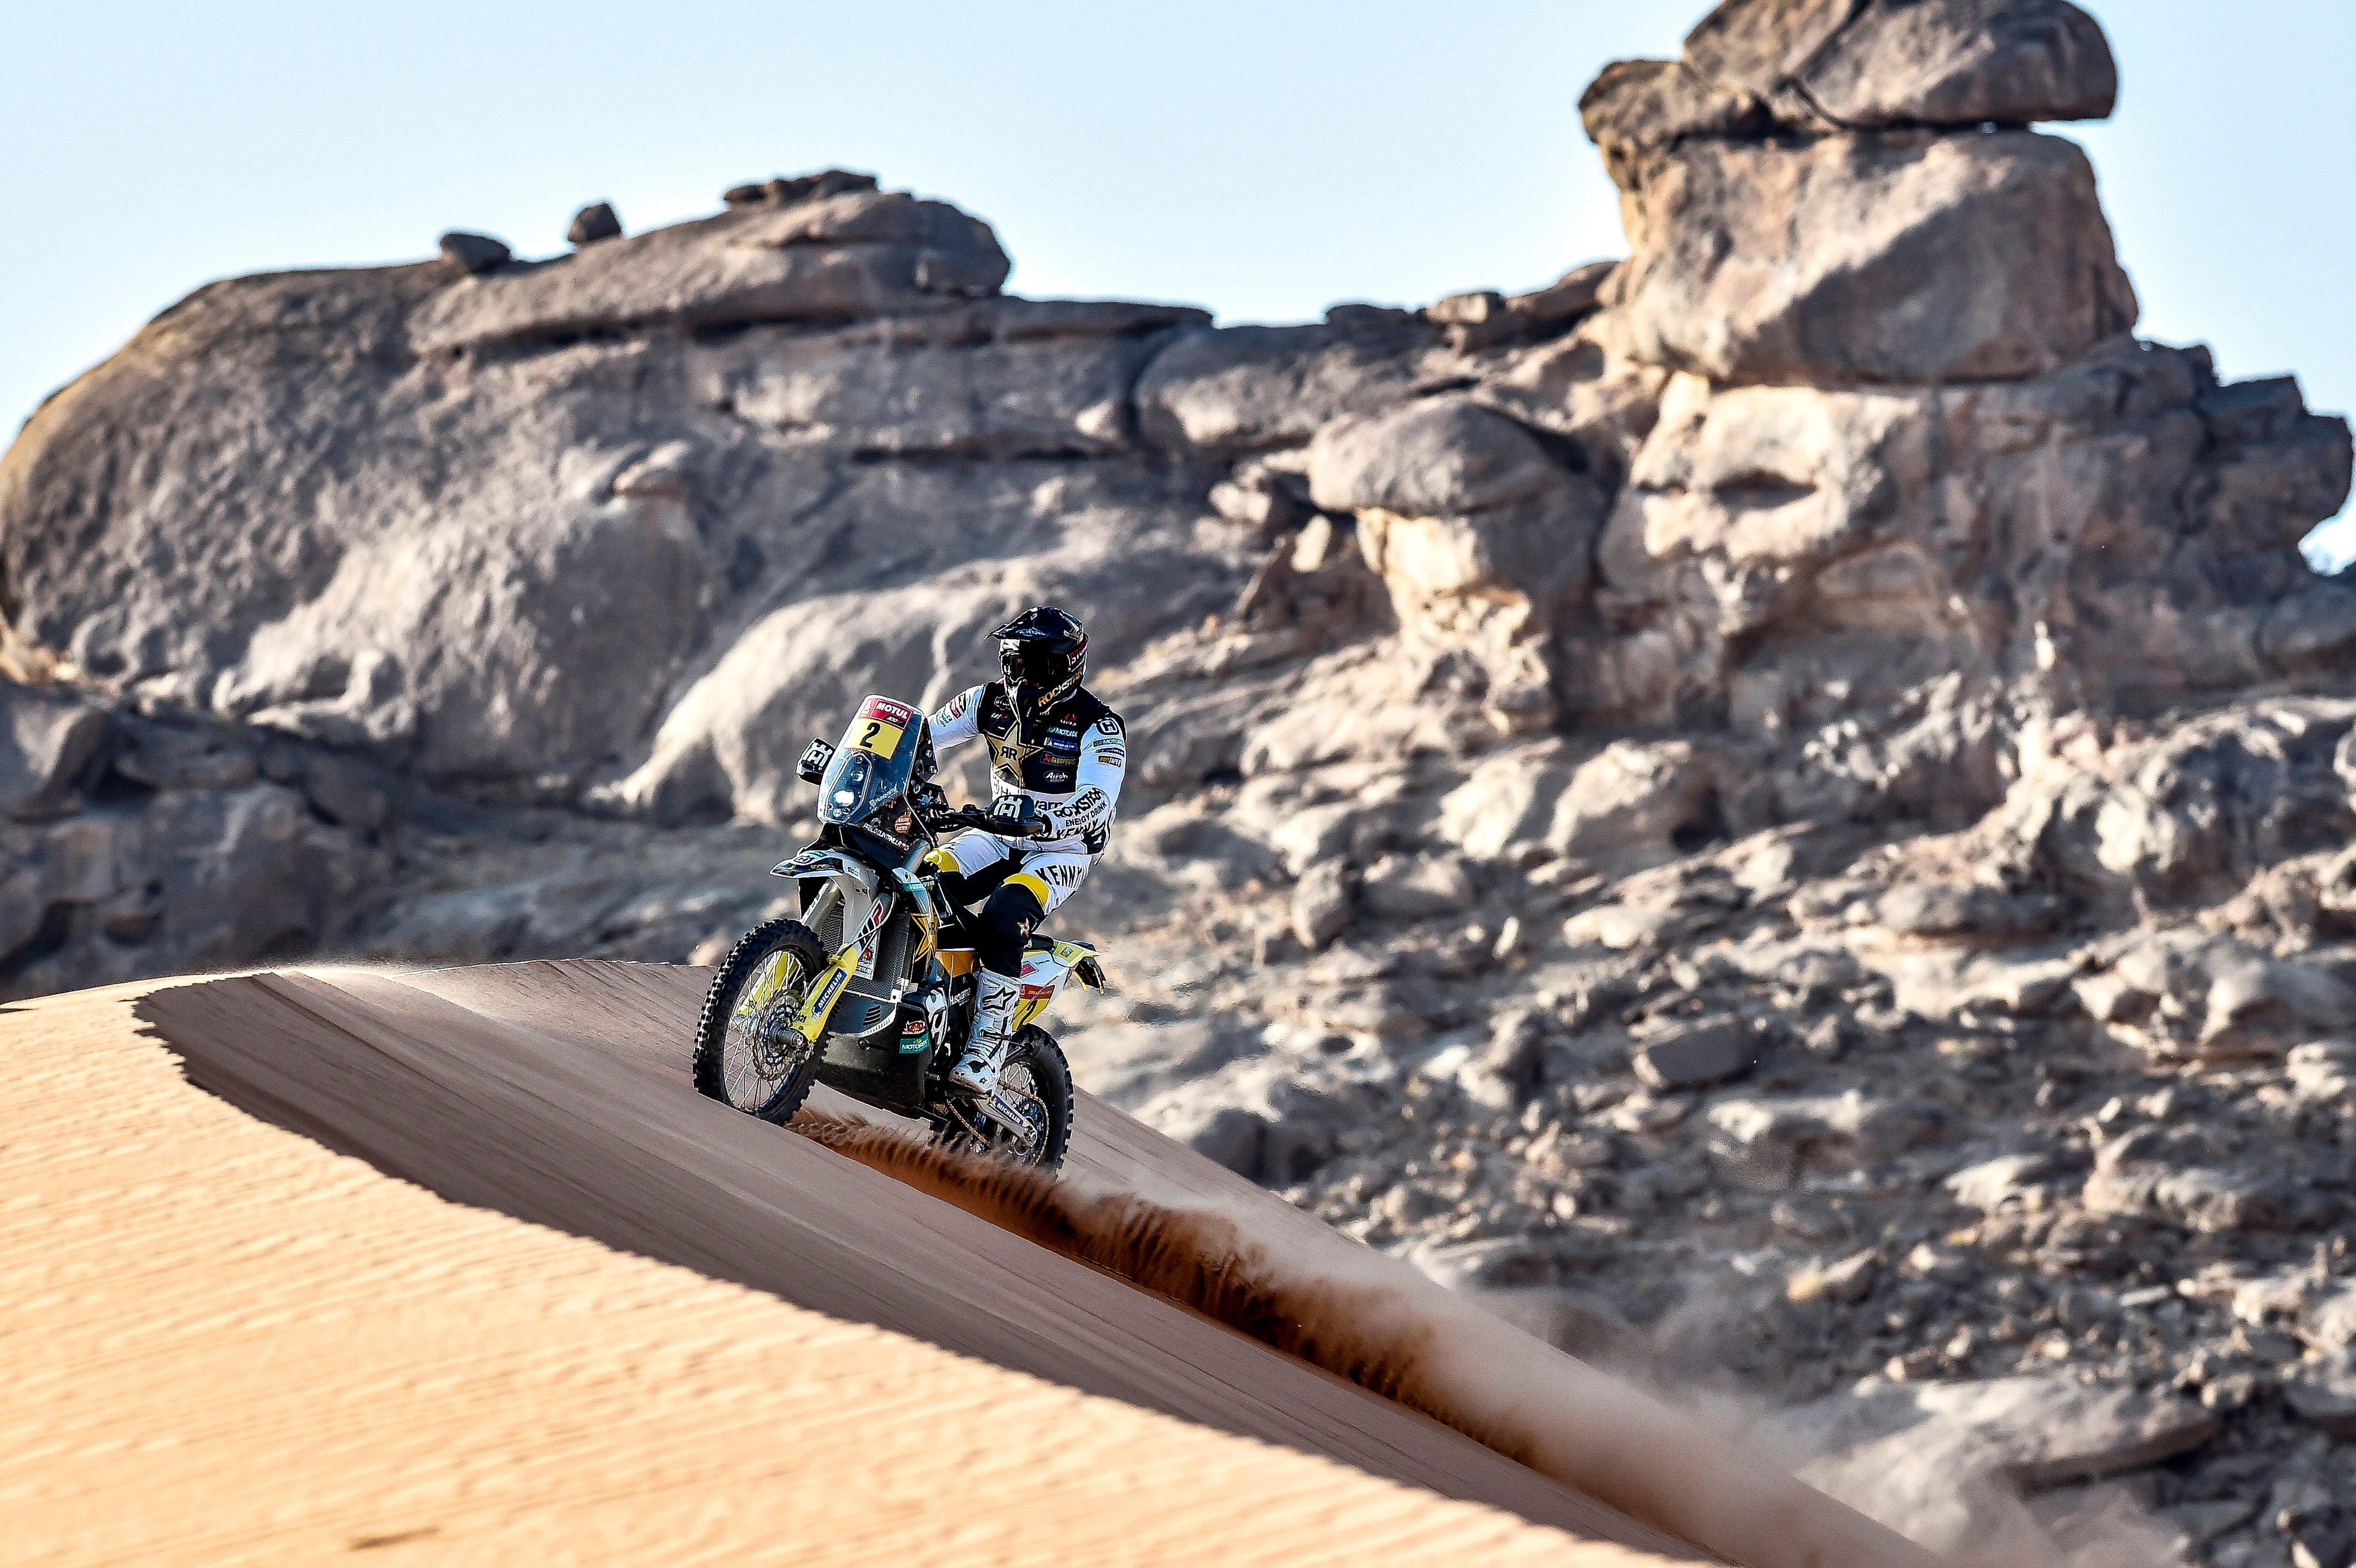 El chileno Pablo Quintanilla compite en la segunda etapa del Rally Dakar 2021 para terminar, provisionalmente, el tercero más rápido y su compañero de equipo Luciano Benavides a salvo dentro del top 10, en octava posición. EFE/Husqvarna Motorcycles GmbH 